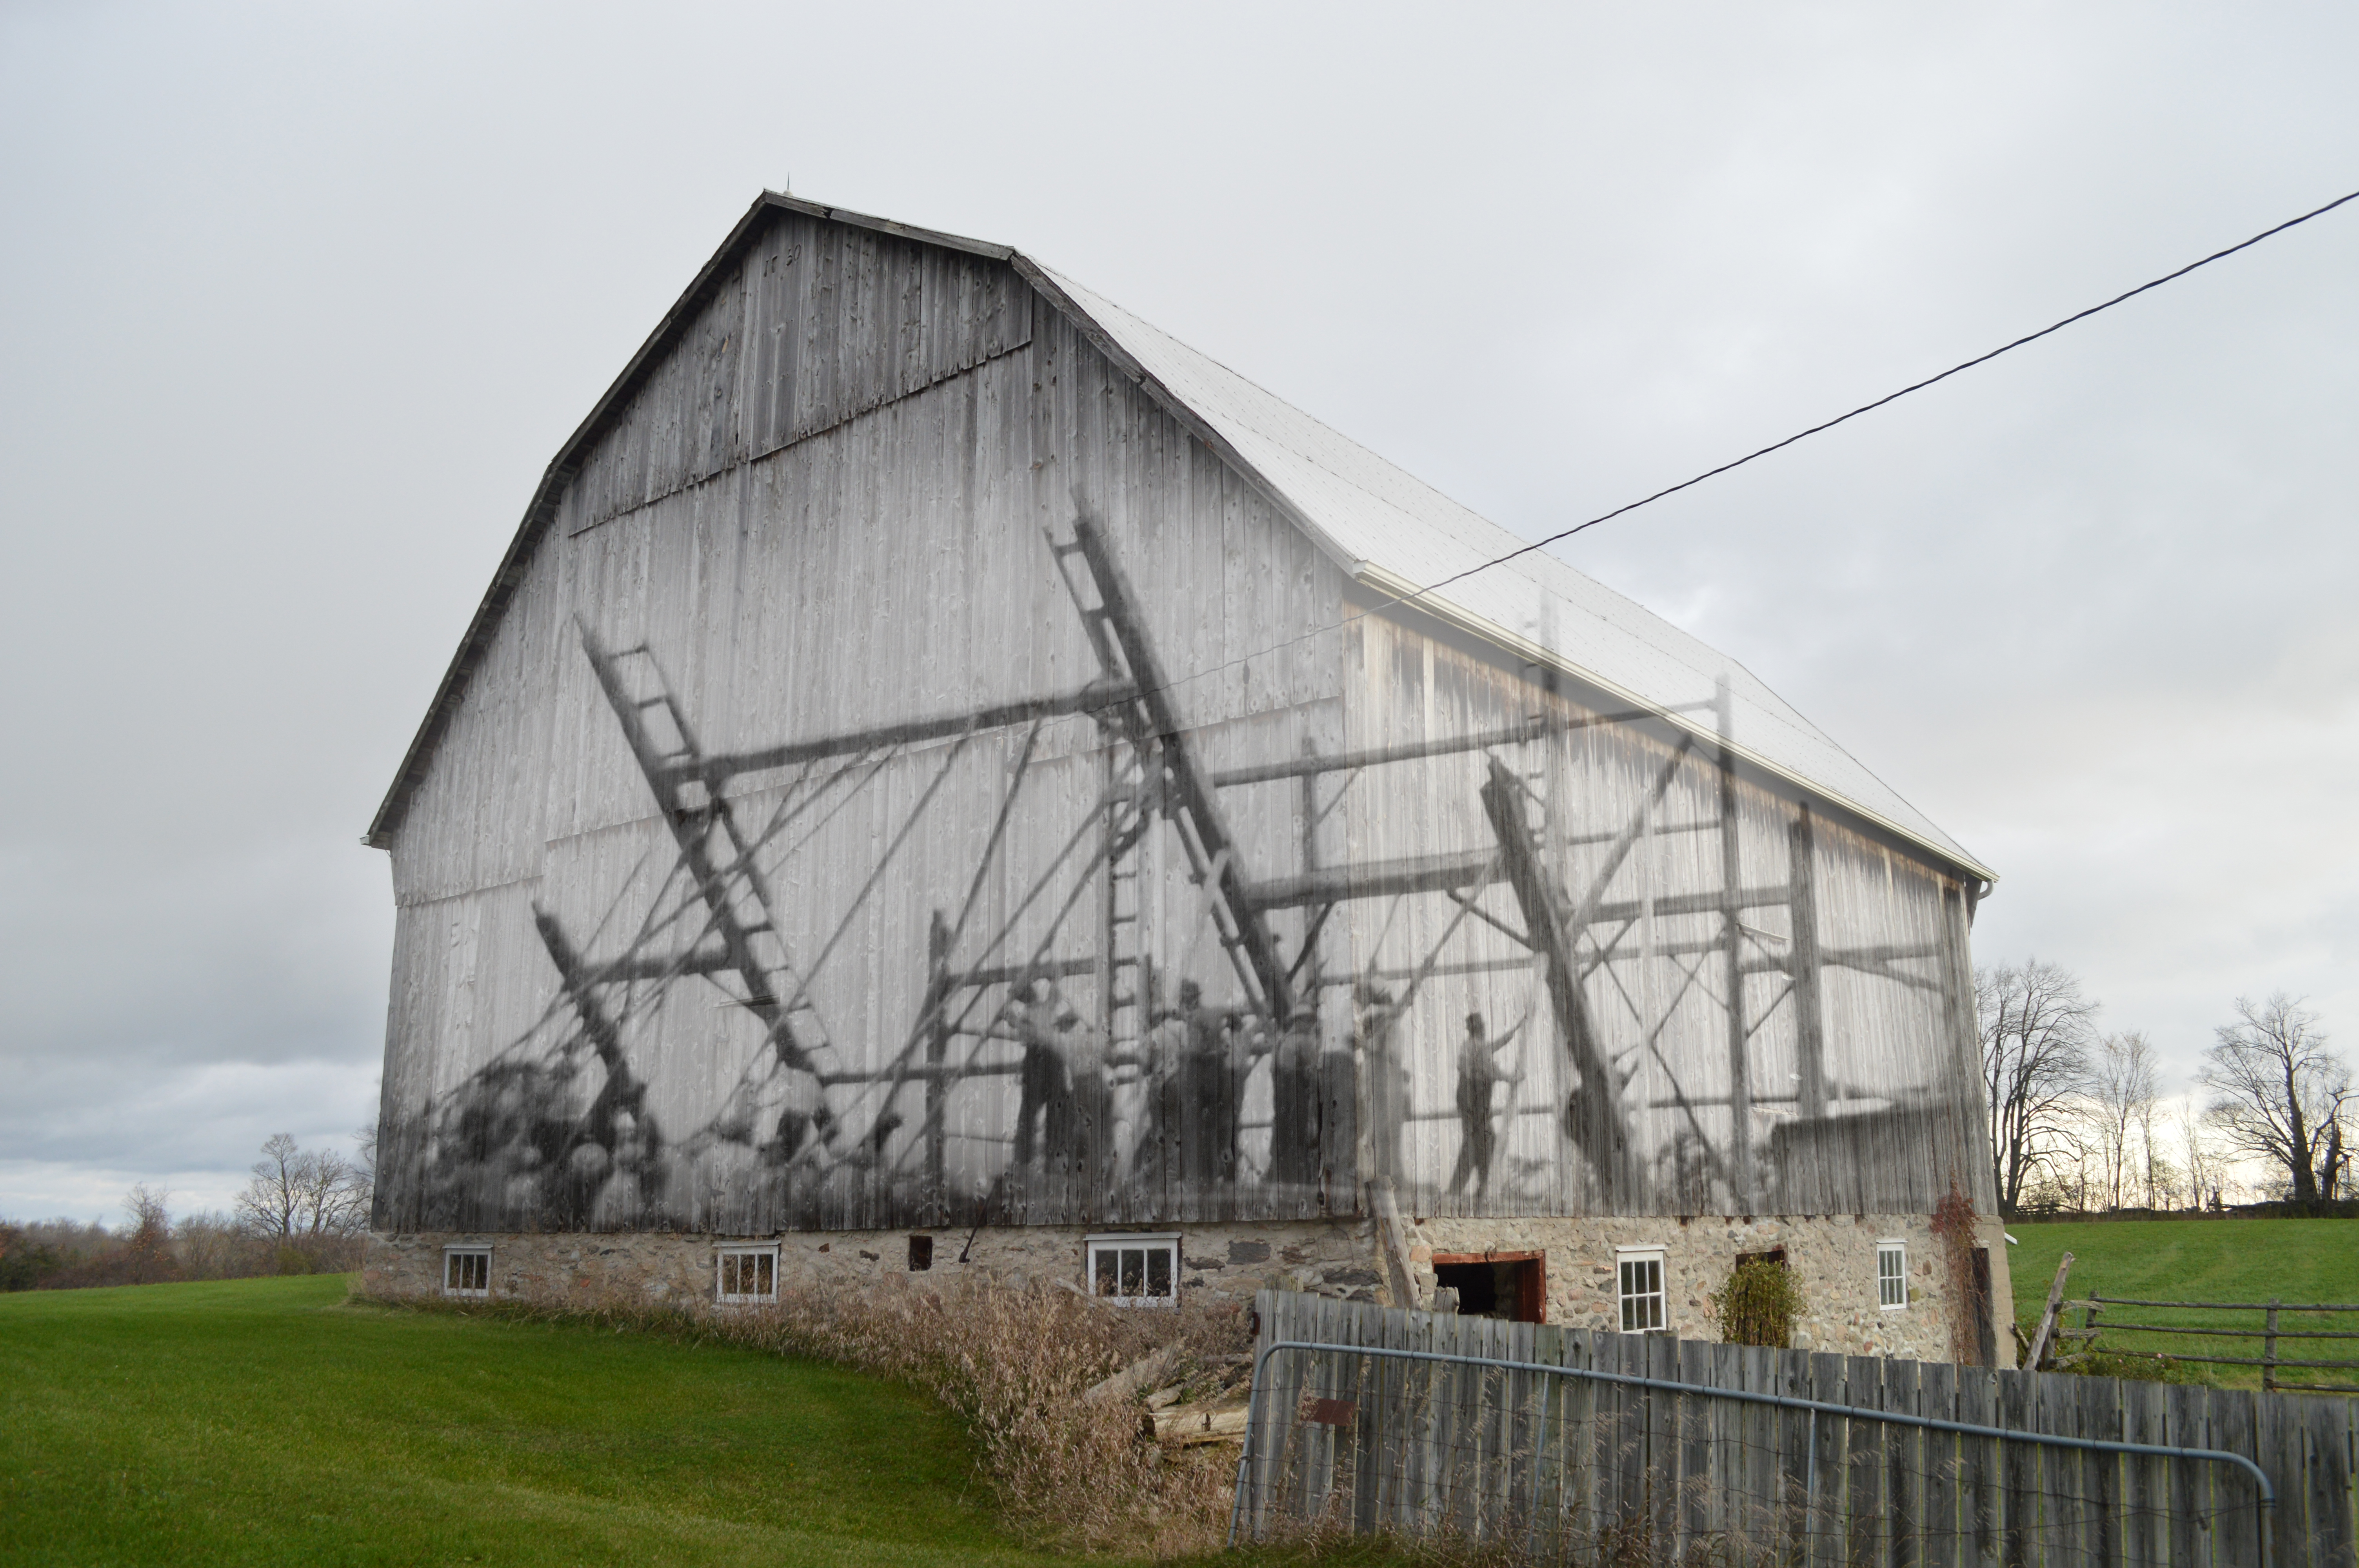 Une image contemporaine d'une grange, superposée avec une image de la corvée qui l'avait levé.